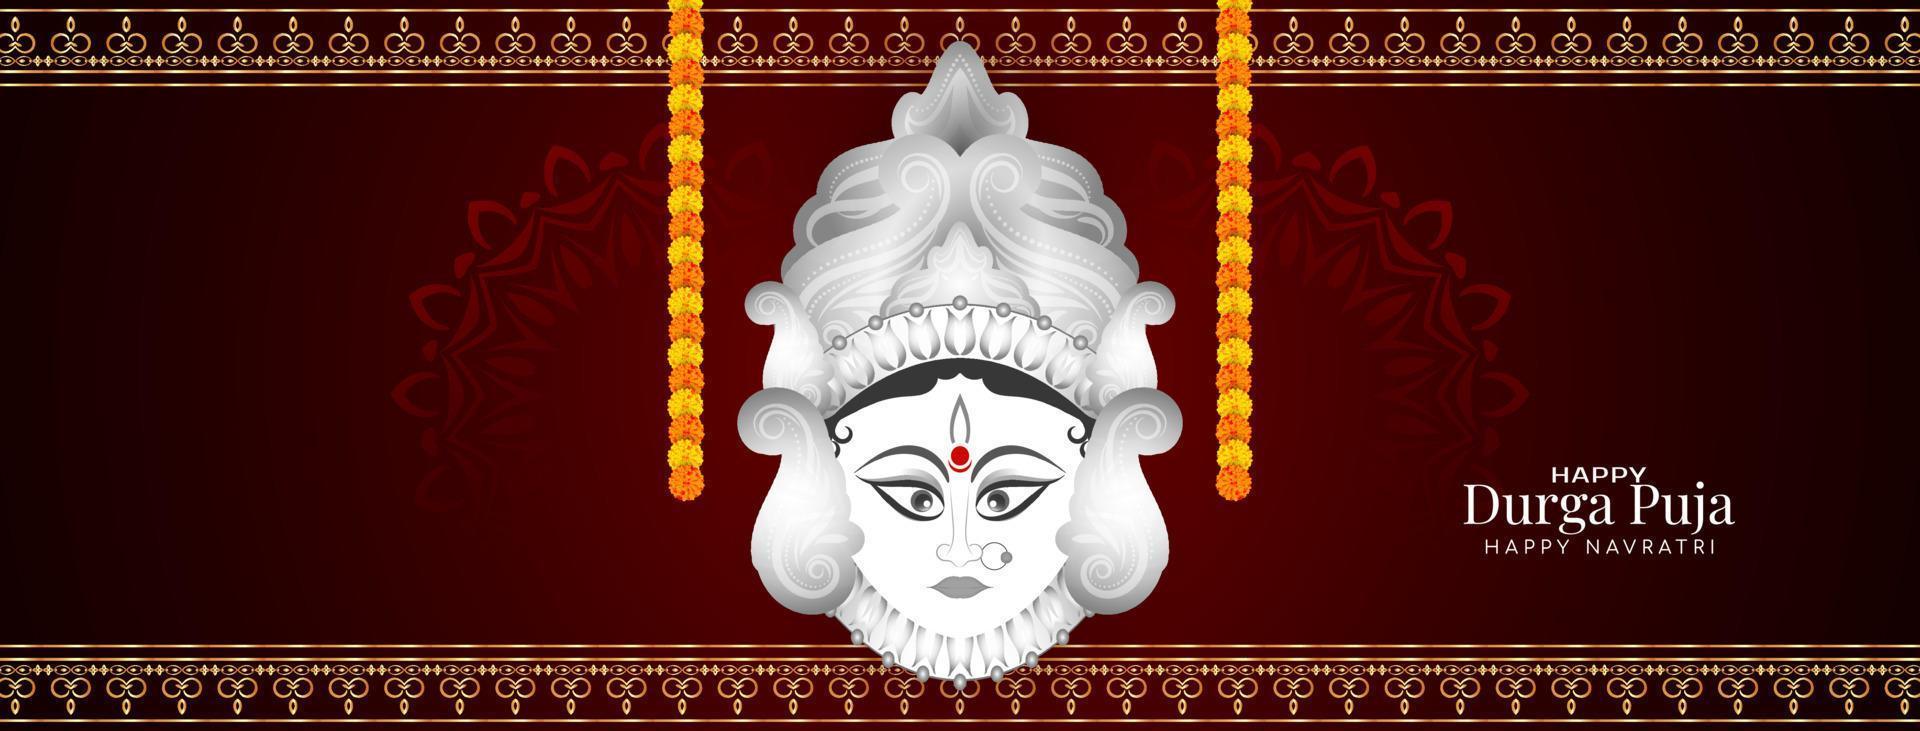 tradizionale Durga puja e contento Navratri Festival saluto bandiera design vettore